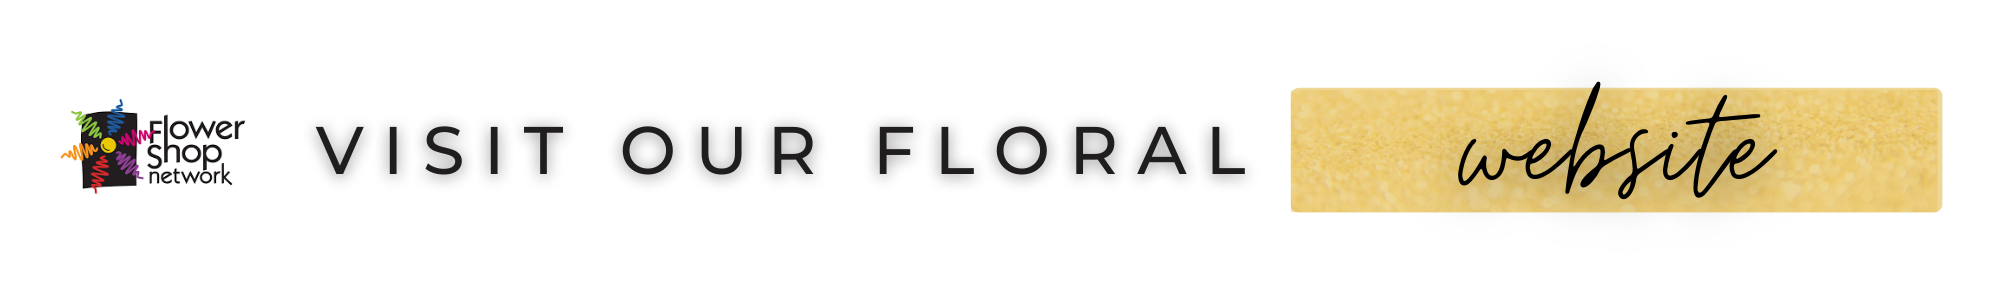 visit our floral website!